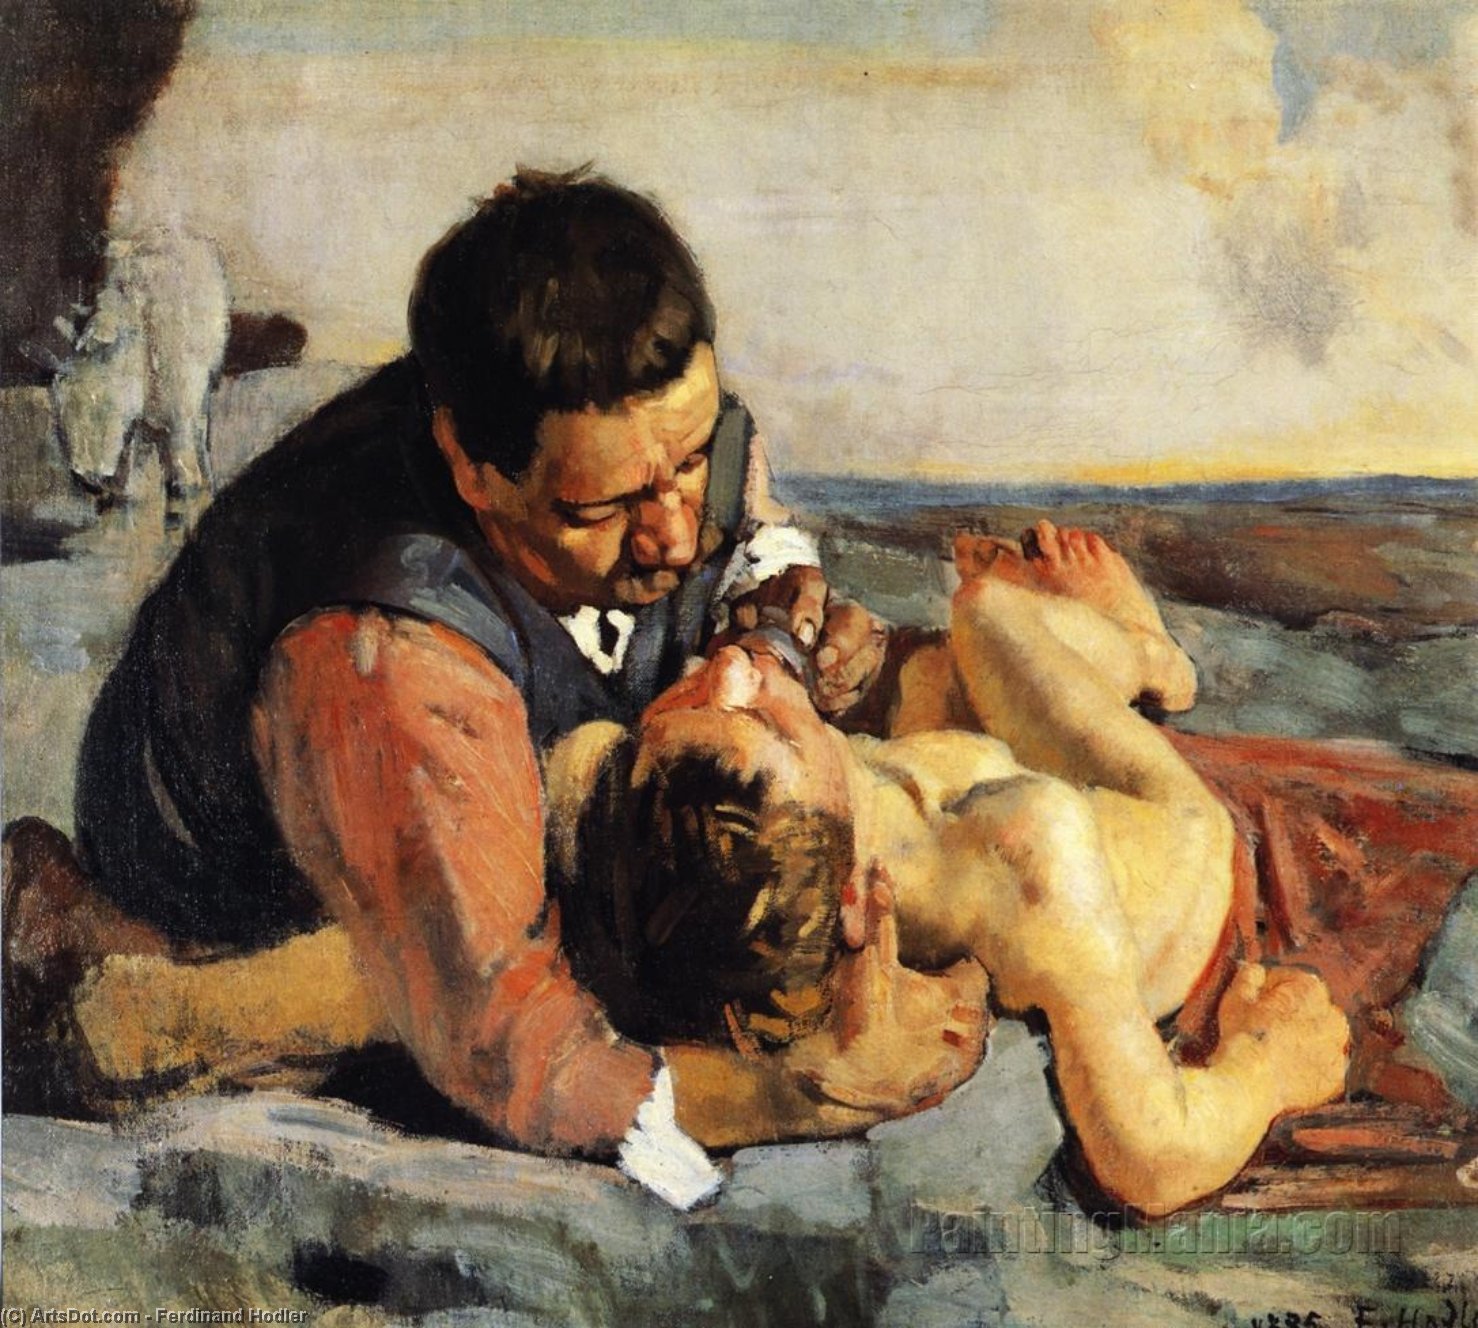 WikiOO.org - Encyclopedia of Fine Arts - Målning, konstverk Ferdinand Hodler - The Good Samaritan